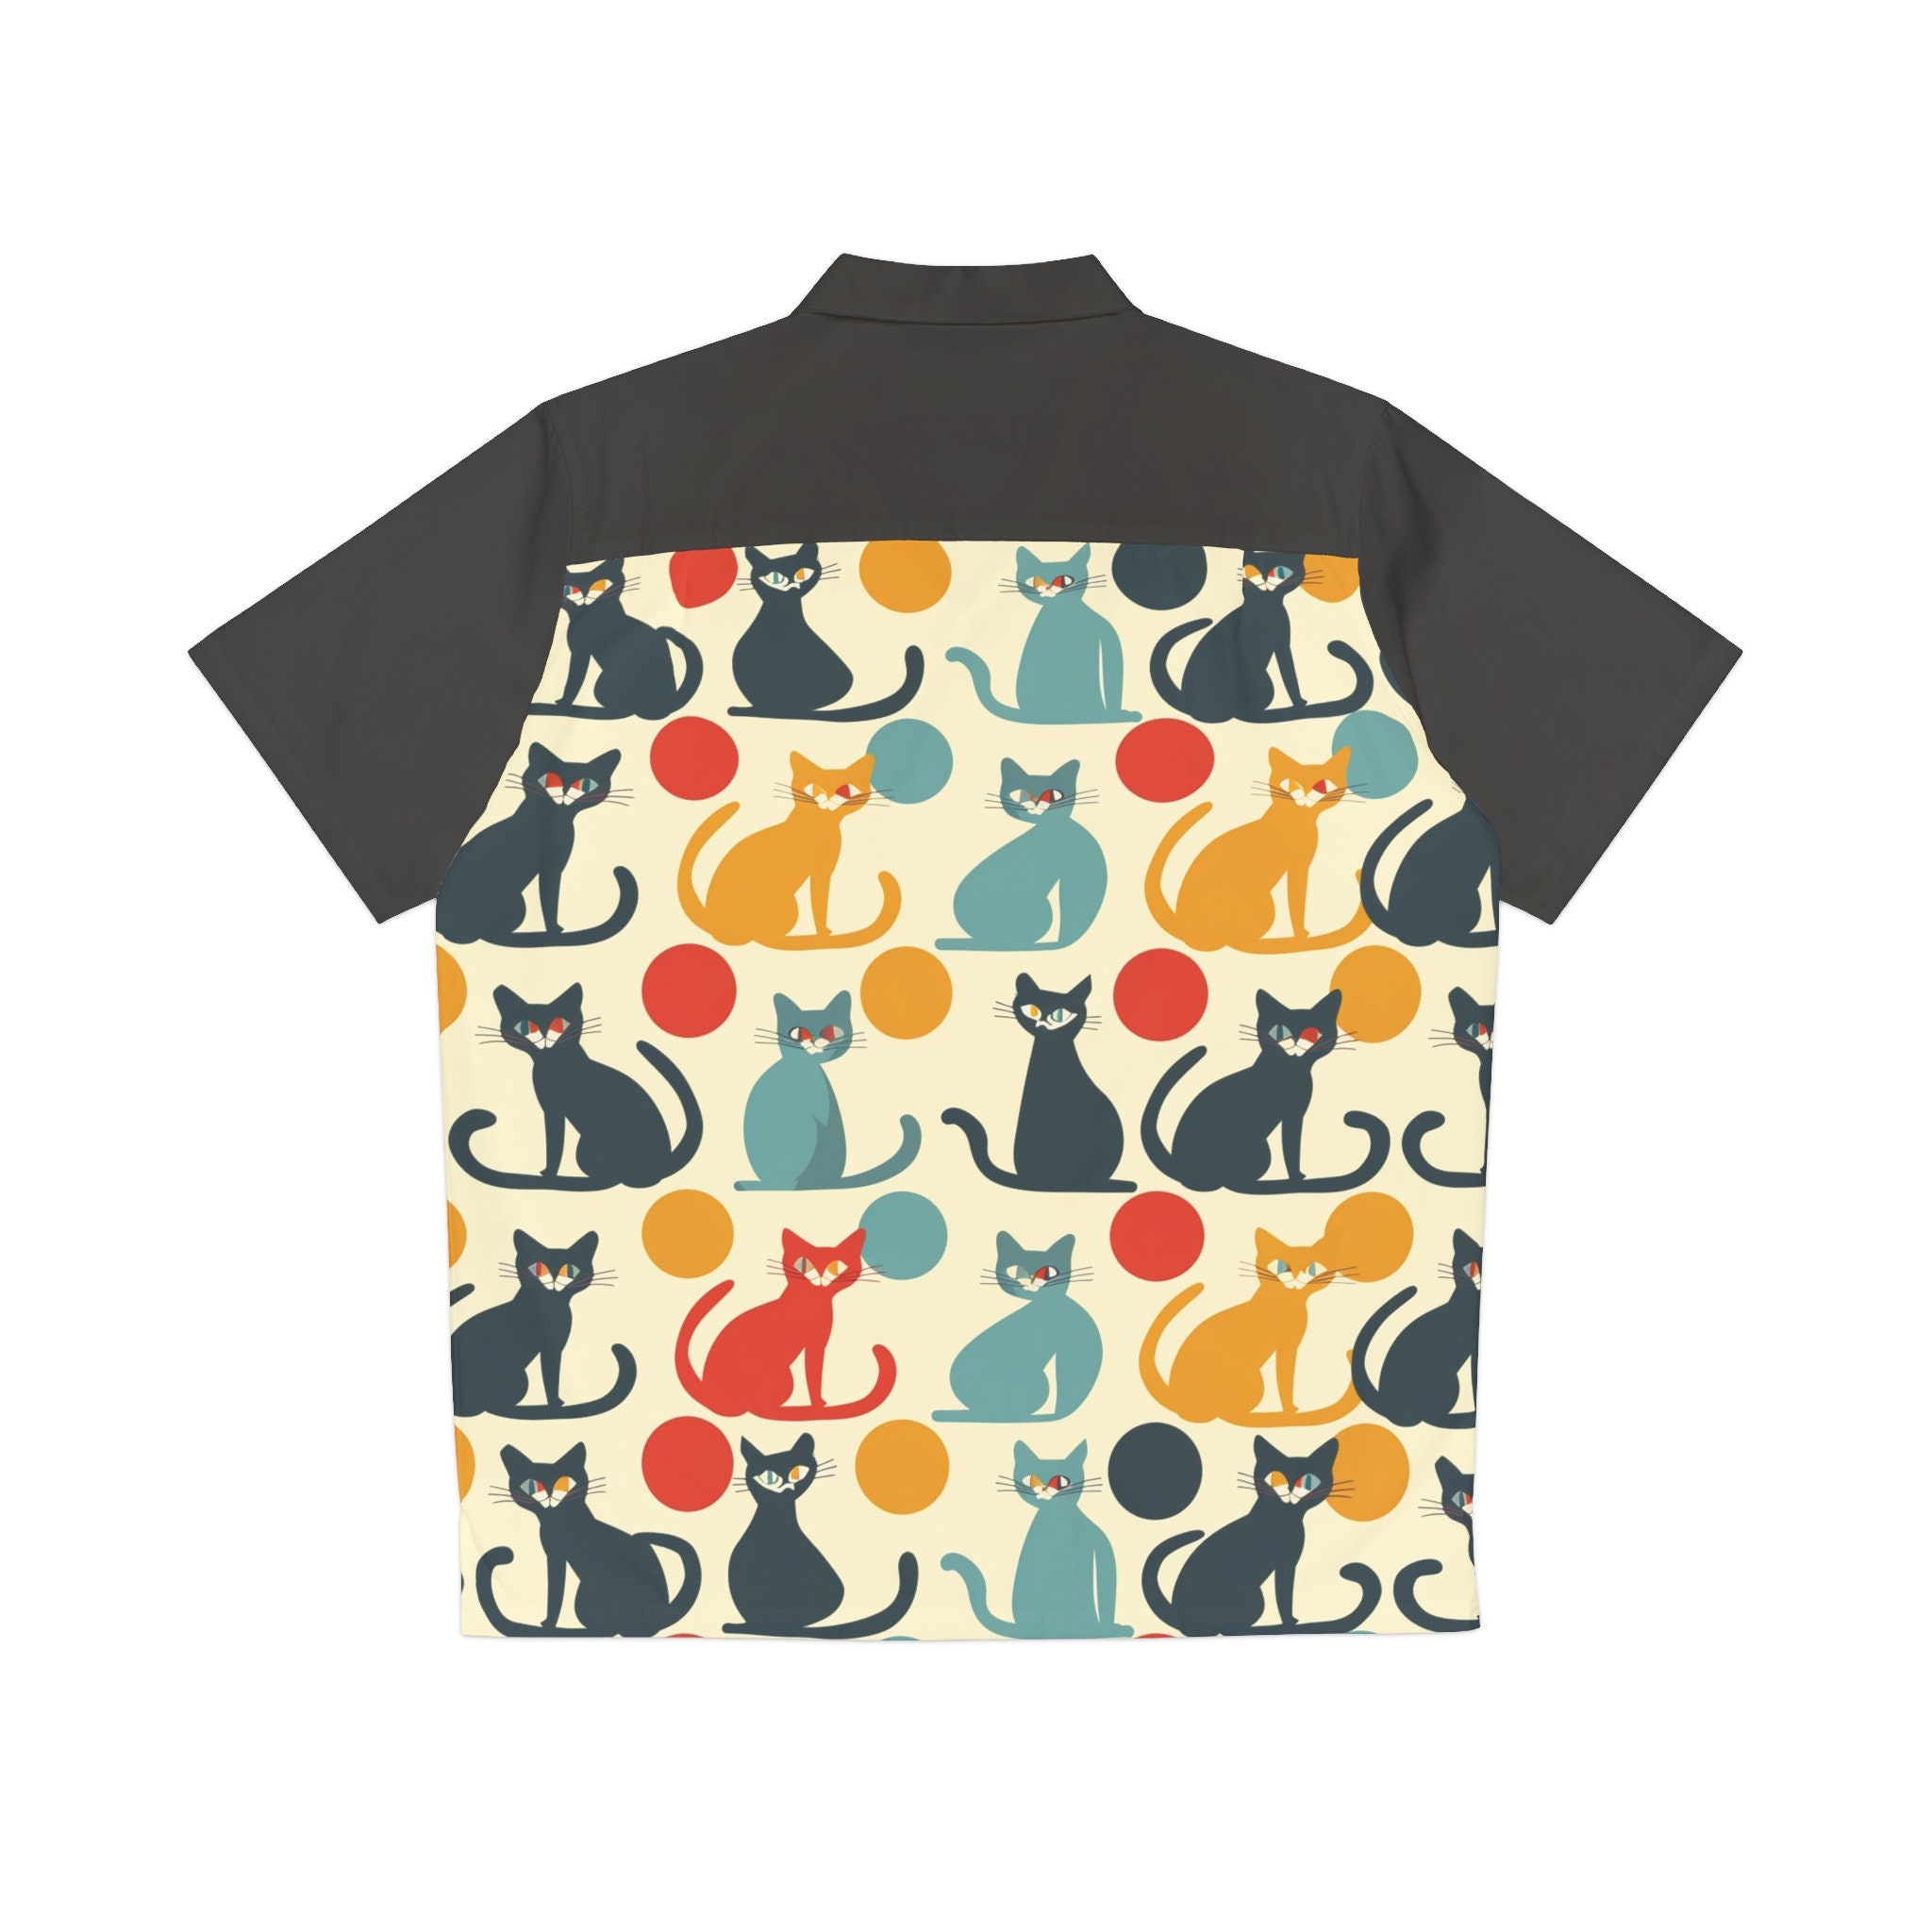 Cats Retro Vintage-inspired Hawaiian Shirt, 1950s/60s style